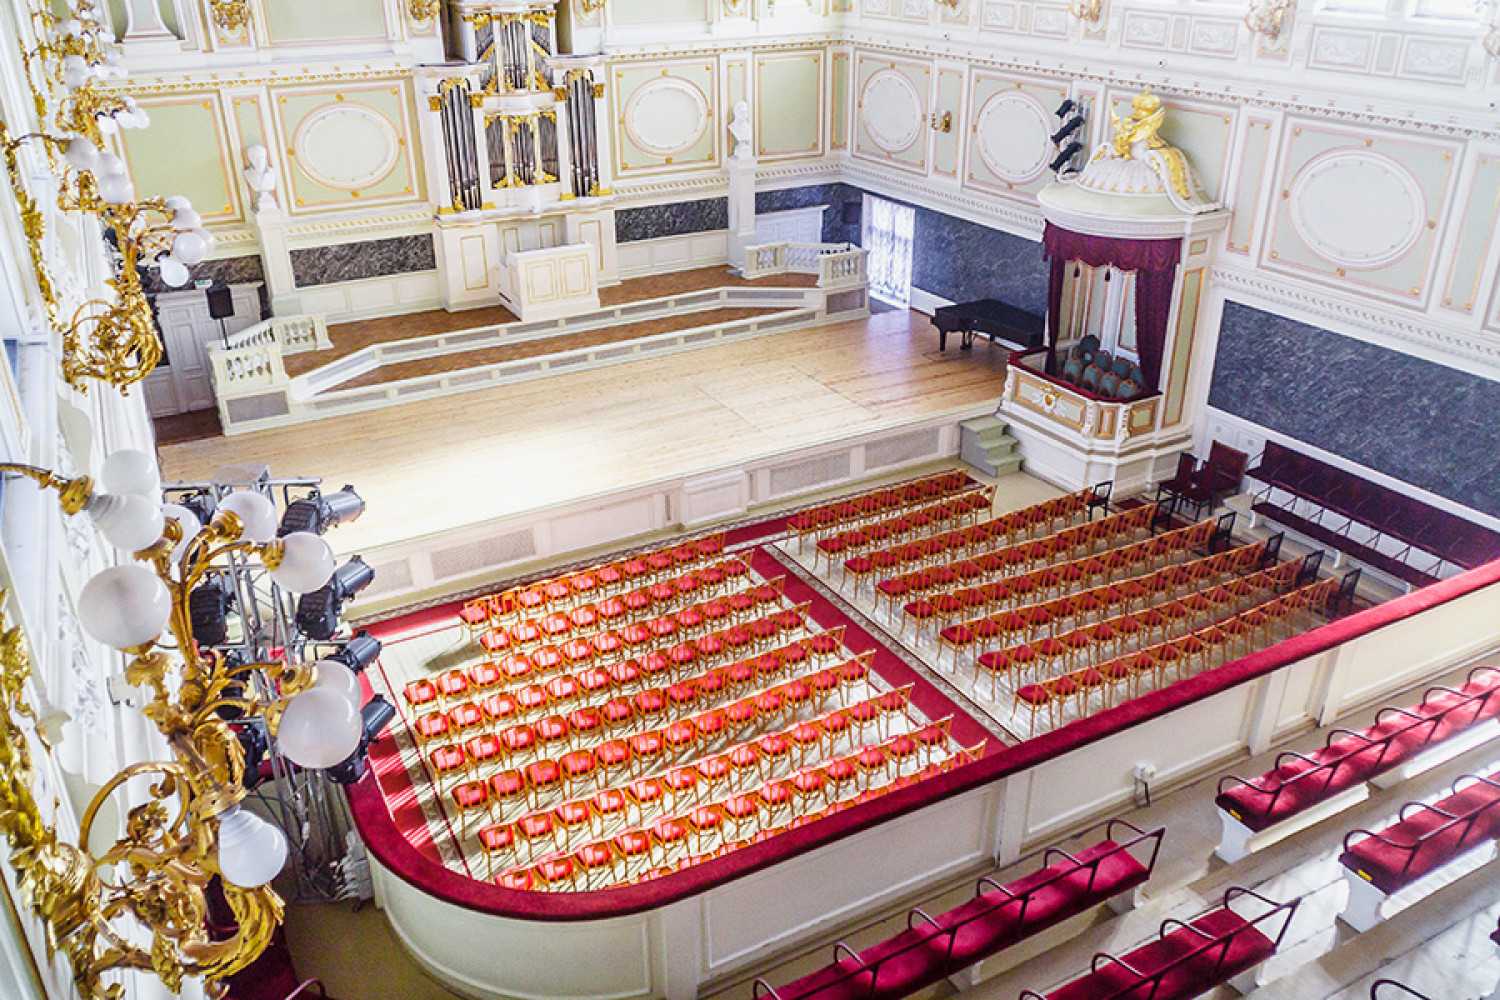 Государственная академическая капелла санкт-петербурга: дворы, залы, орган